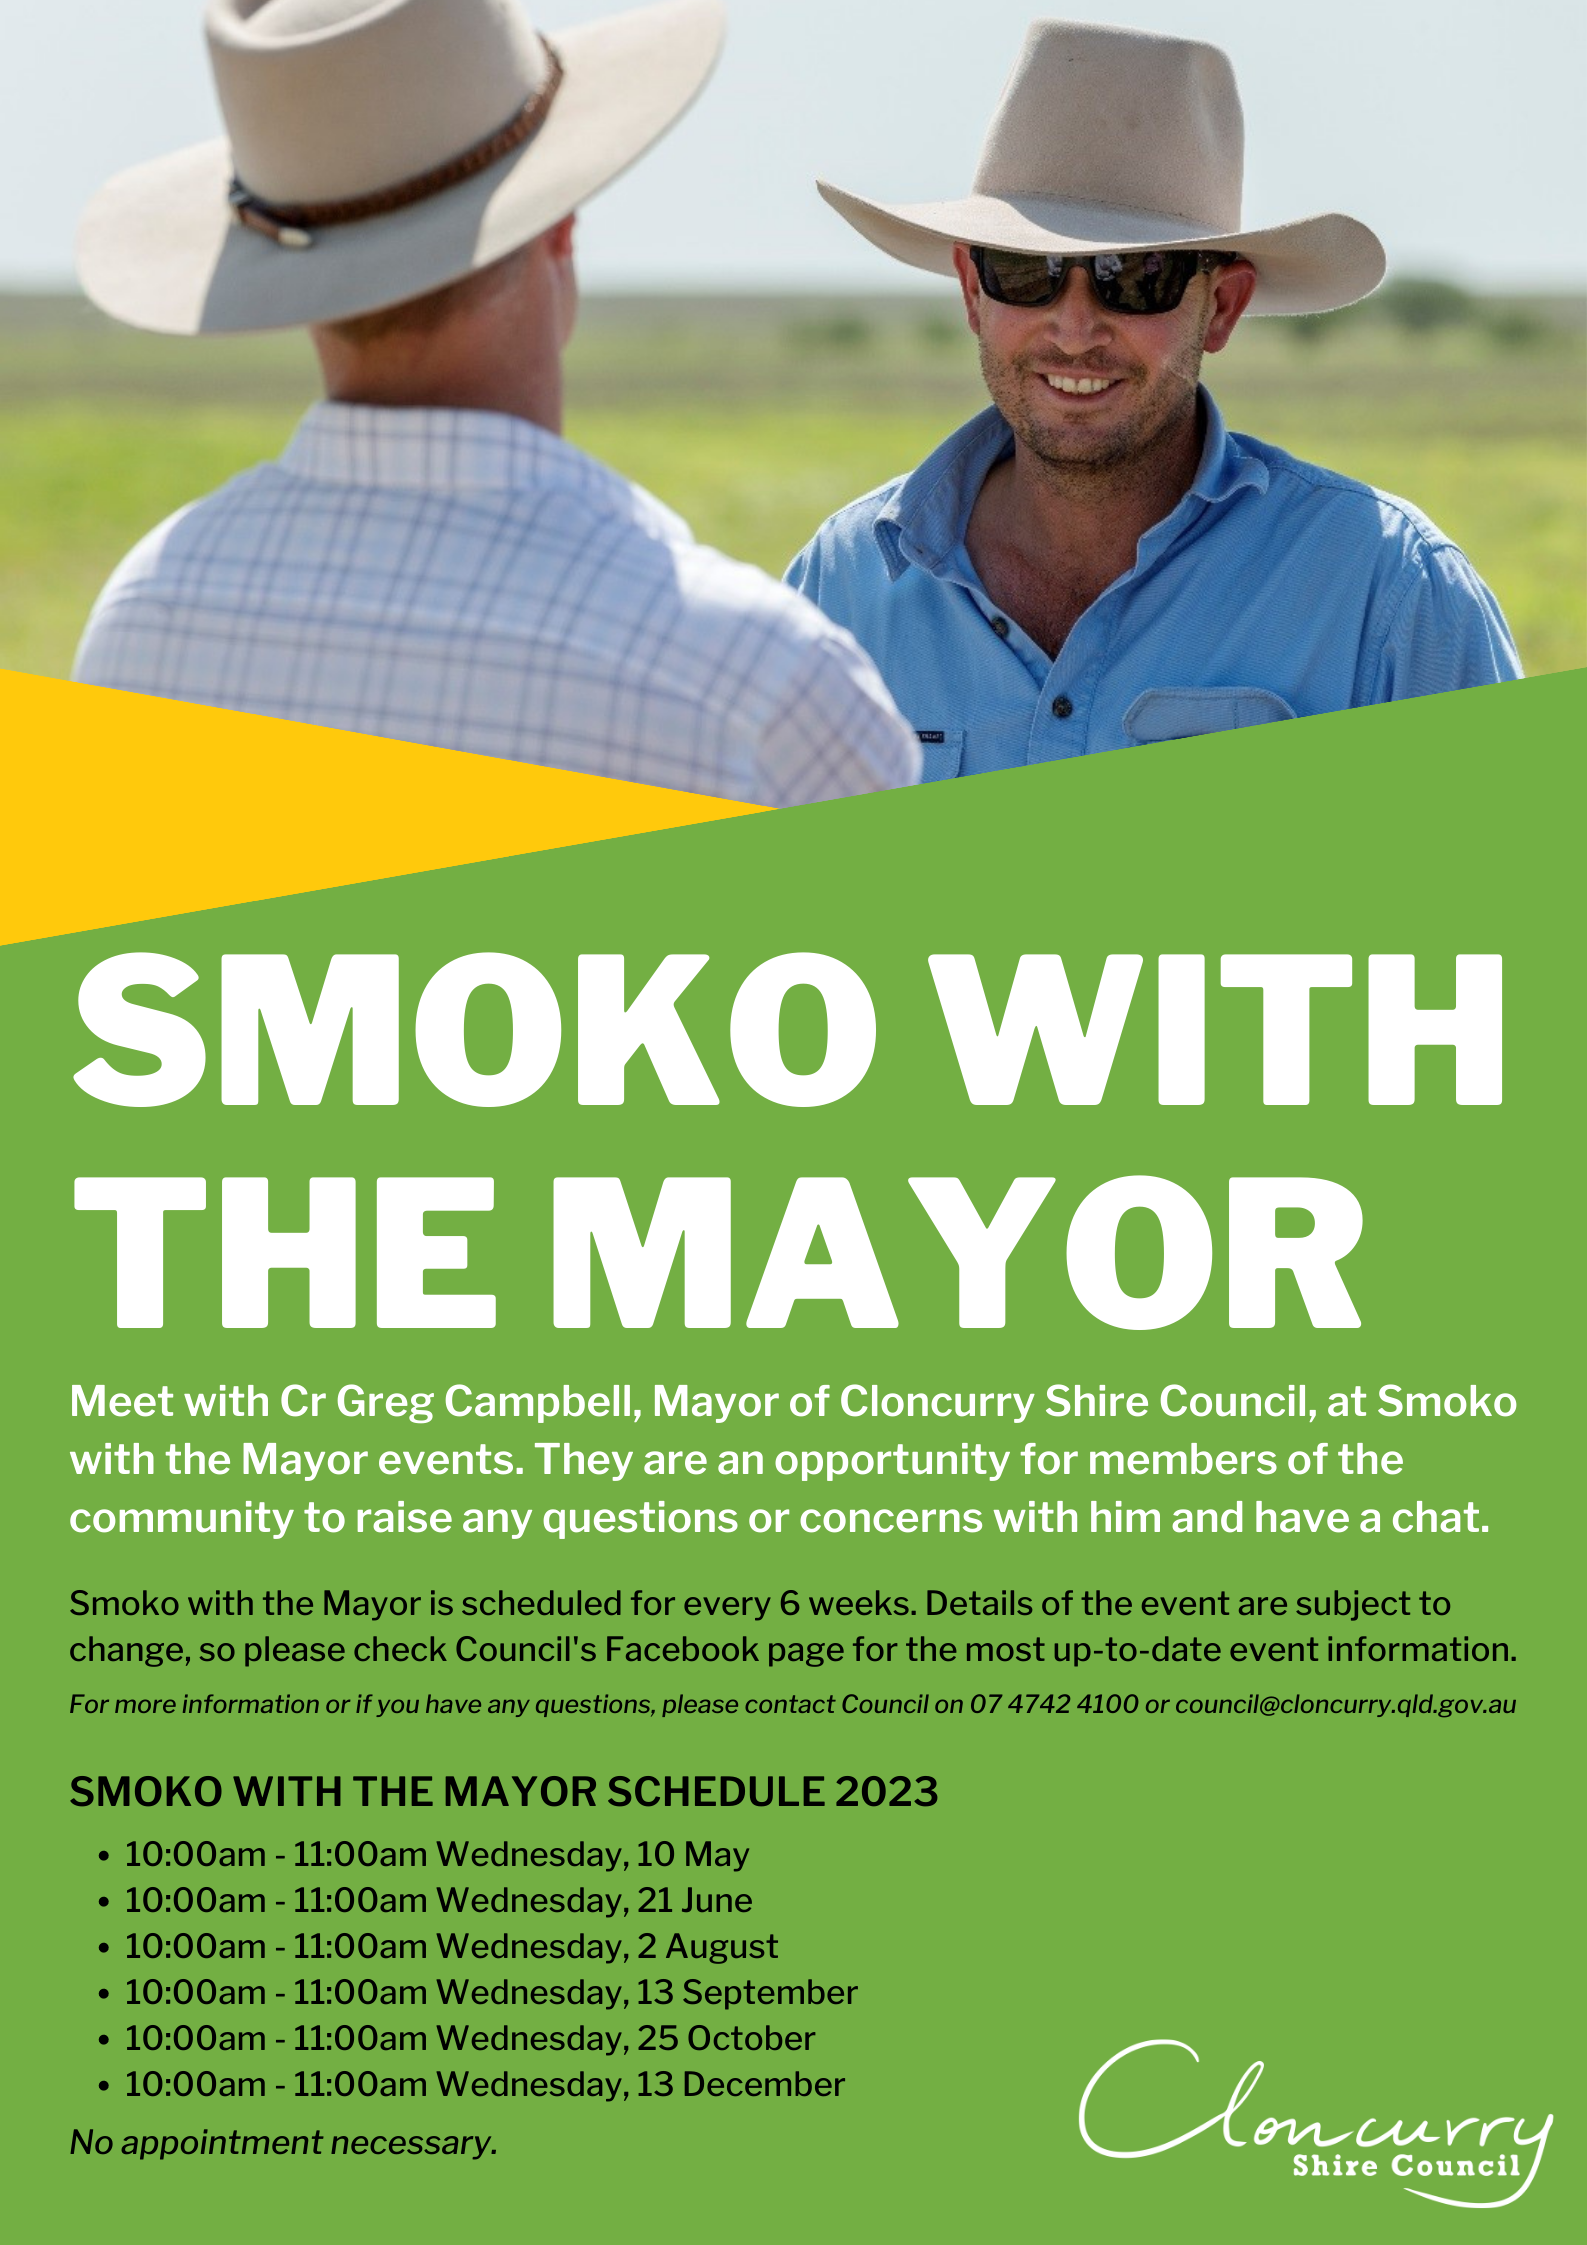 Smoko with the Mayor 2023